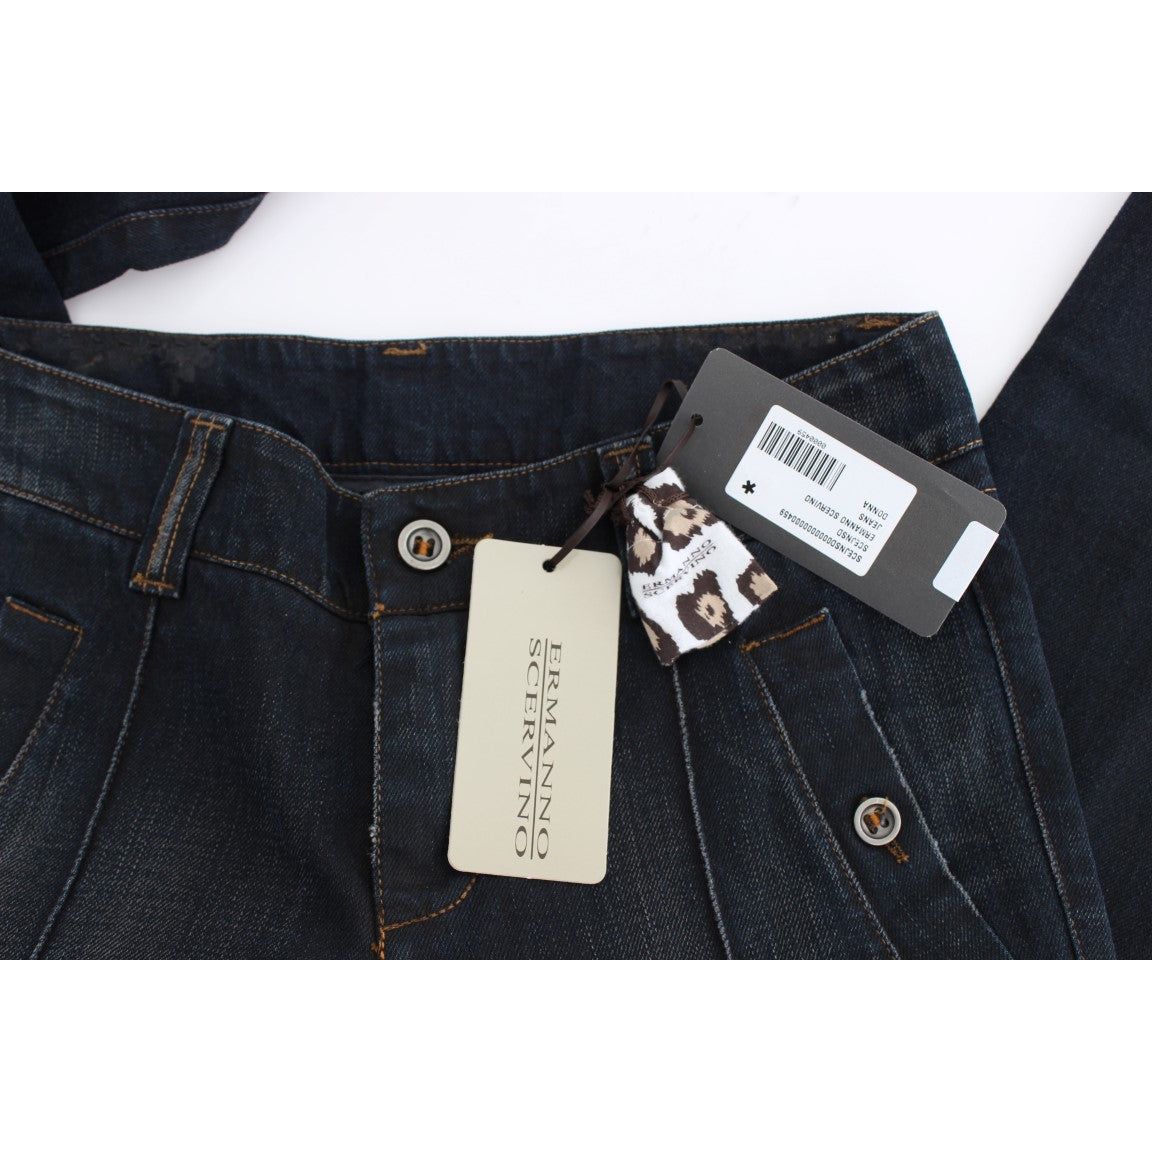 Ermanno Scervino Chic Slim Fit Italian Cotton Jeans blue-wash-cotton-slim-fit-jeans 318990-blue-wash-cotton-slim-fit-jeans-6.jpg